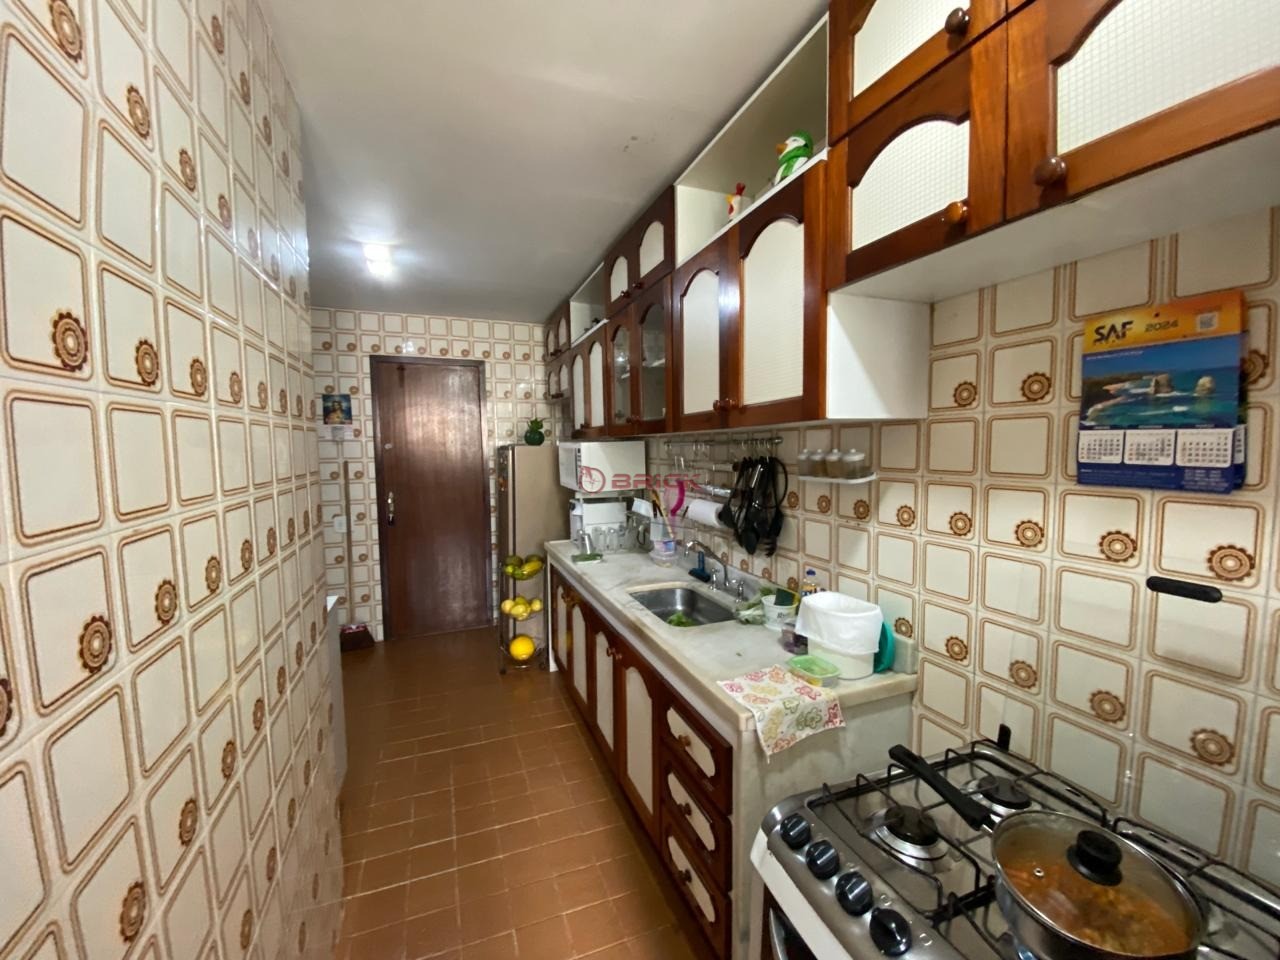 Apartamento à venda em Alto, Teresópolis - RJ - Foto 15